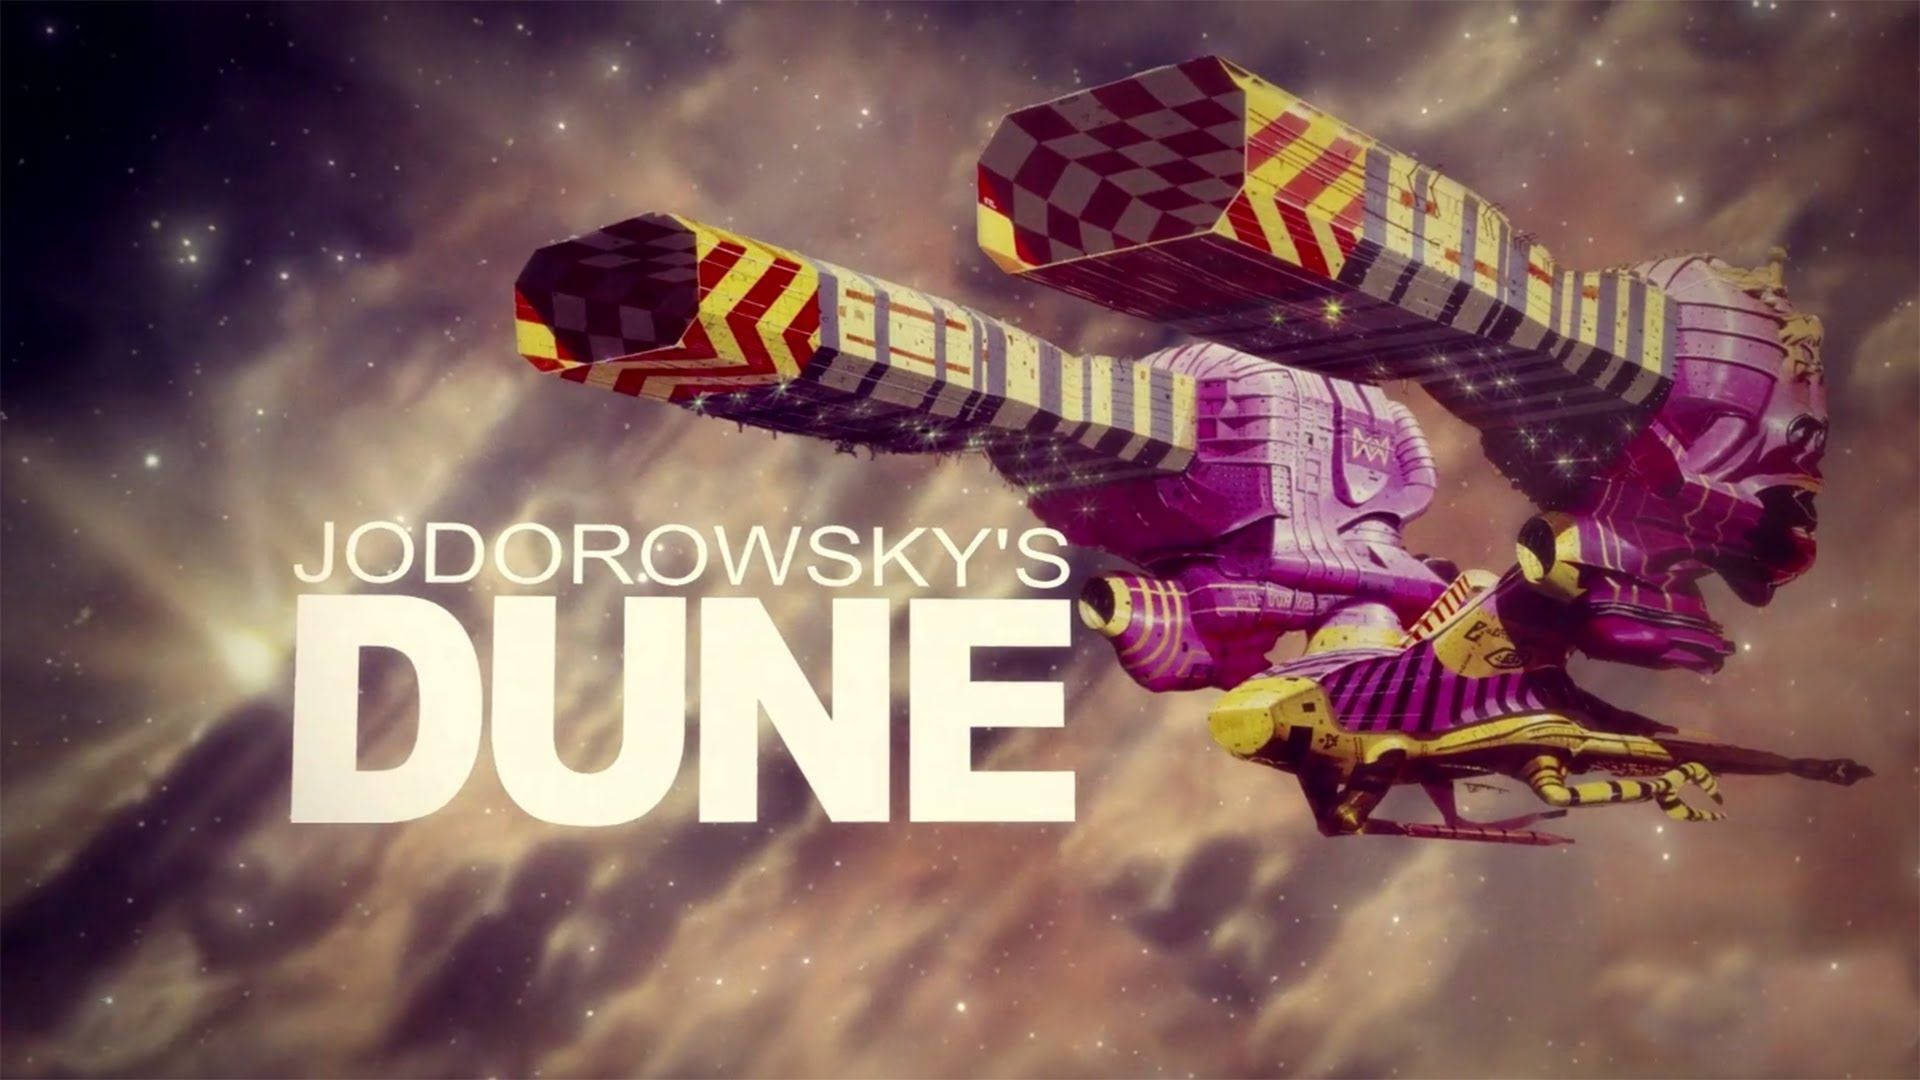 Portadade La Película Jodorowsky's Dune, Con Una Imagen De Una Nave Espacial. Fondo de pantalla